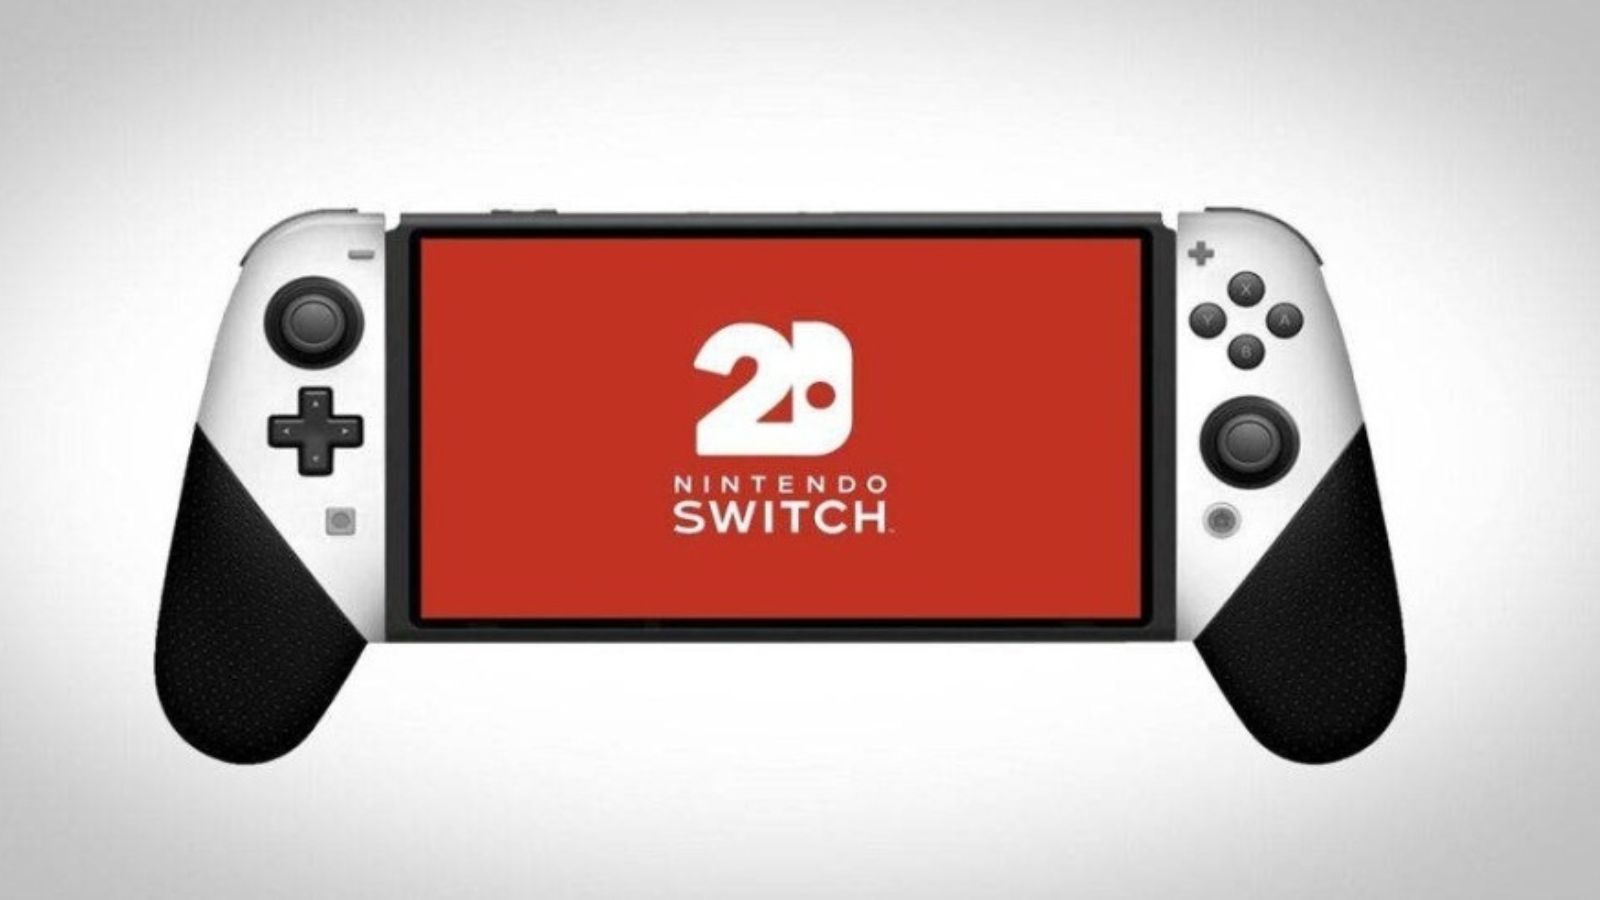 Nintendo Switch 2 niente display oled